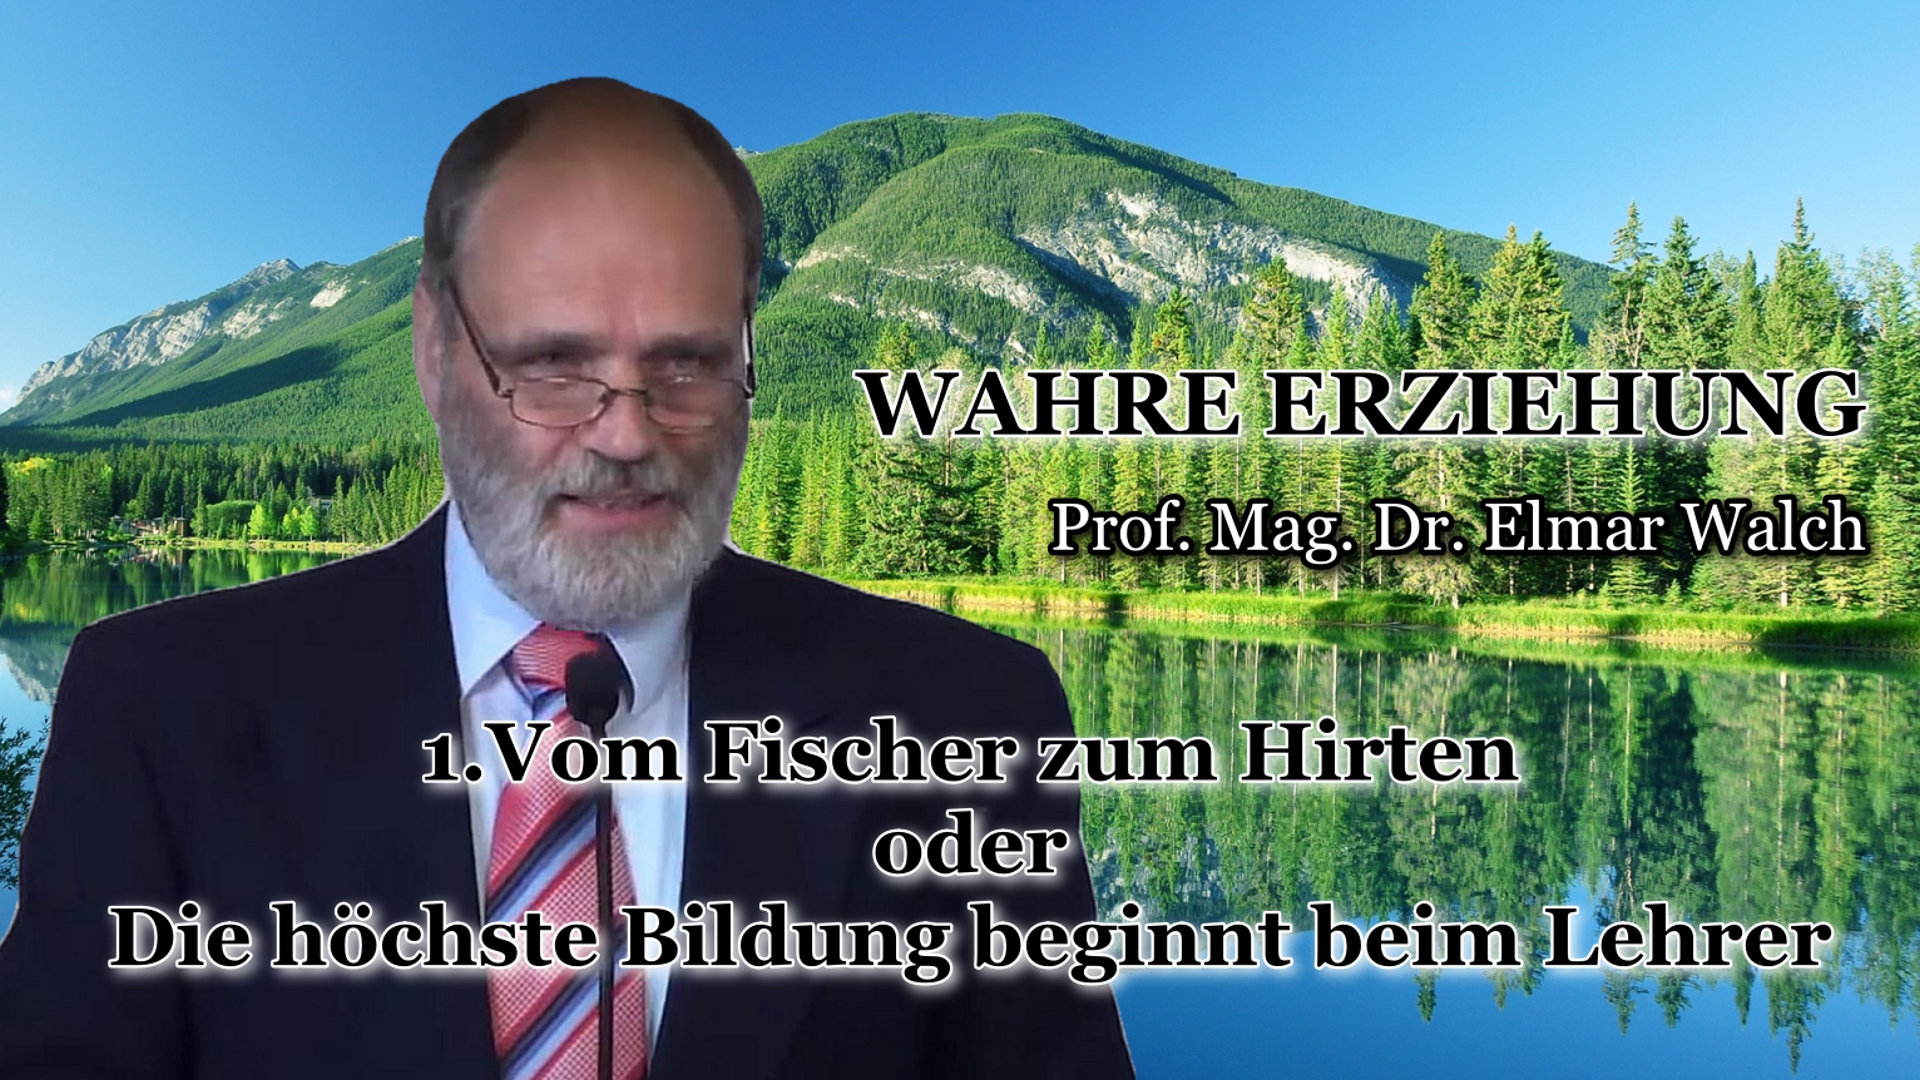 WAHRE ERZIEHUNG – 1.Vom Fischer zum Hirten oder Die höchste Bildung beginnt beim Lehrer | Prof. Mag. Dr. Elmar Walch